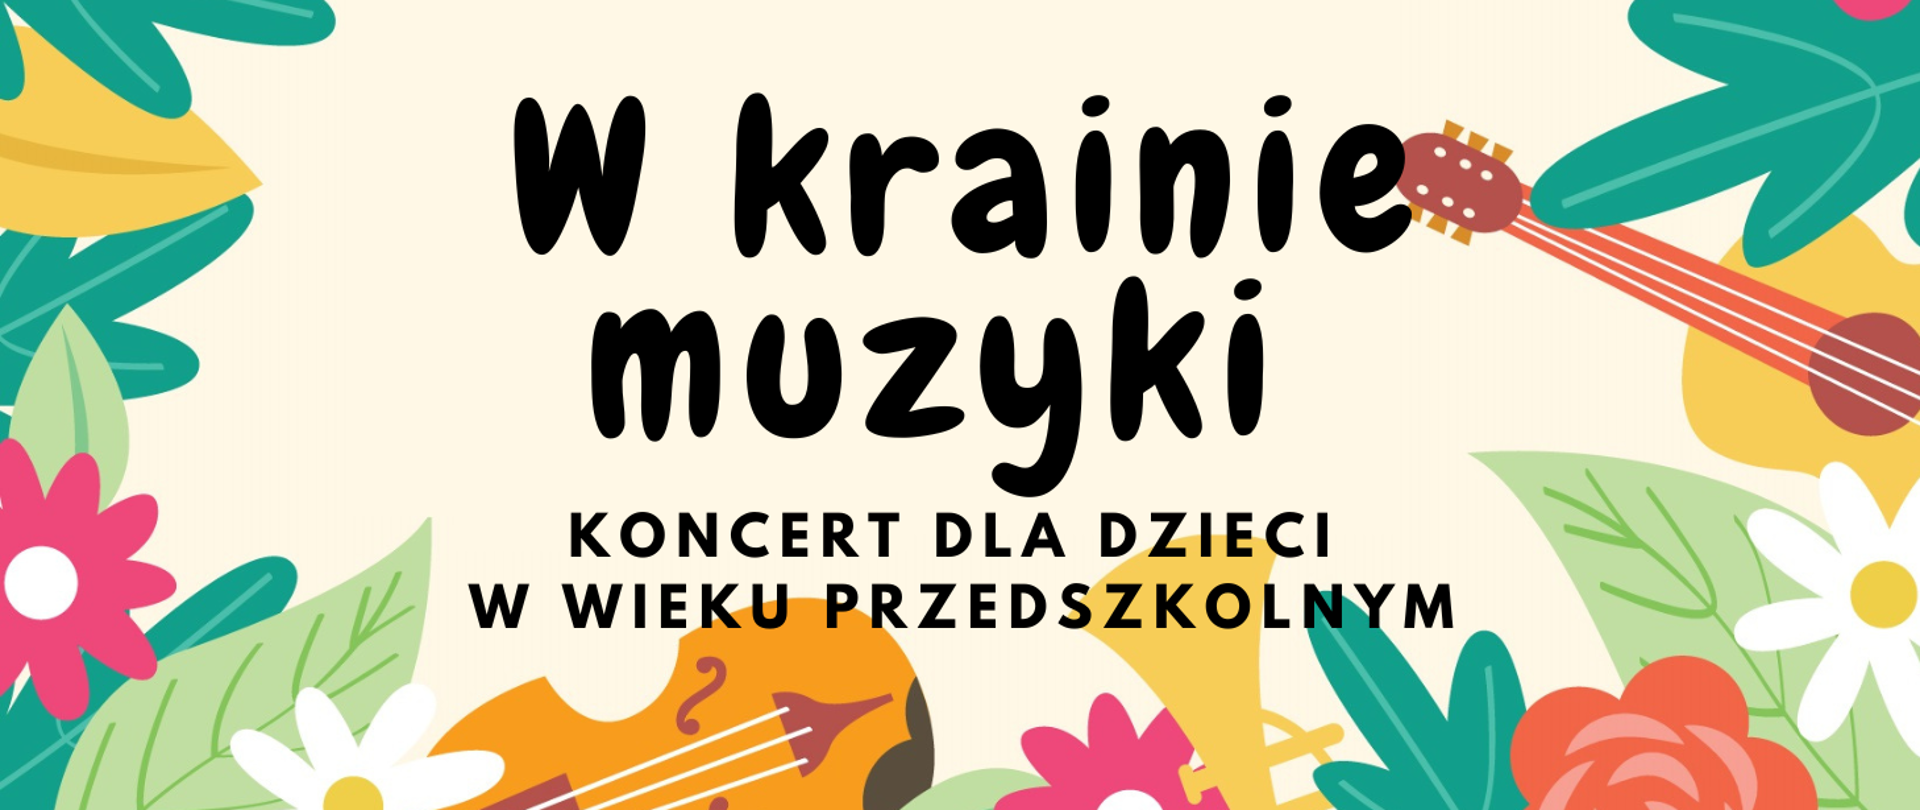 Plakat z kwiatami i instrumentami W krainie muzyki, koncert dla dzieci w wieku przedszkolnym